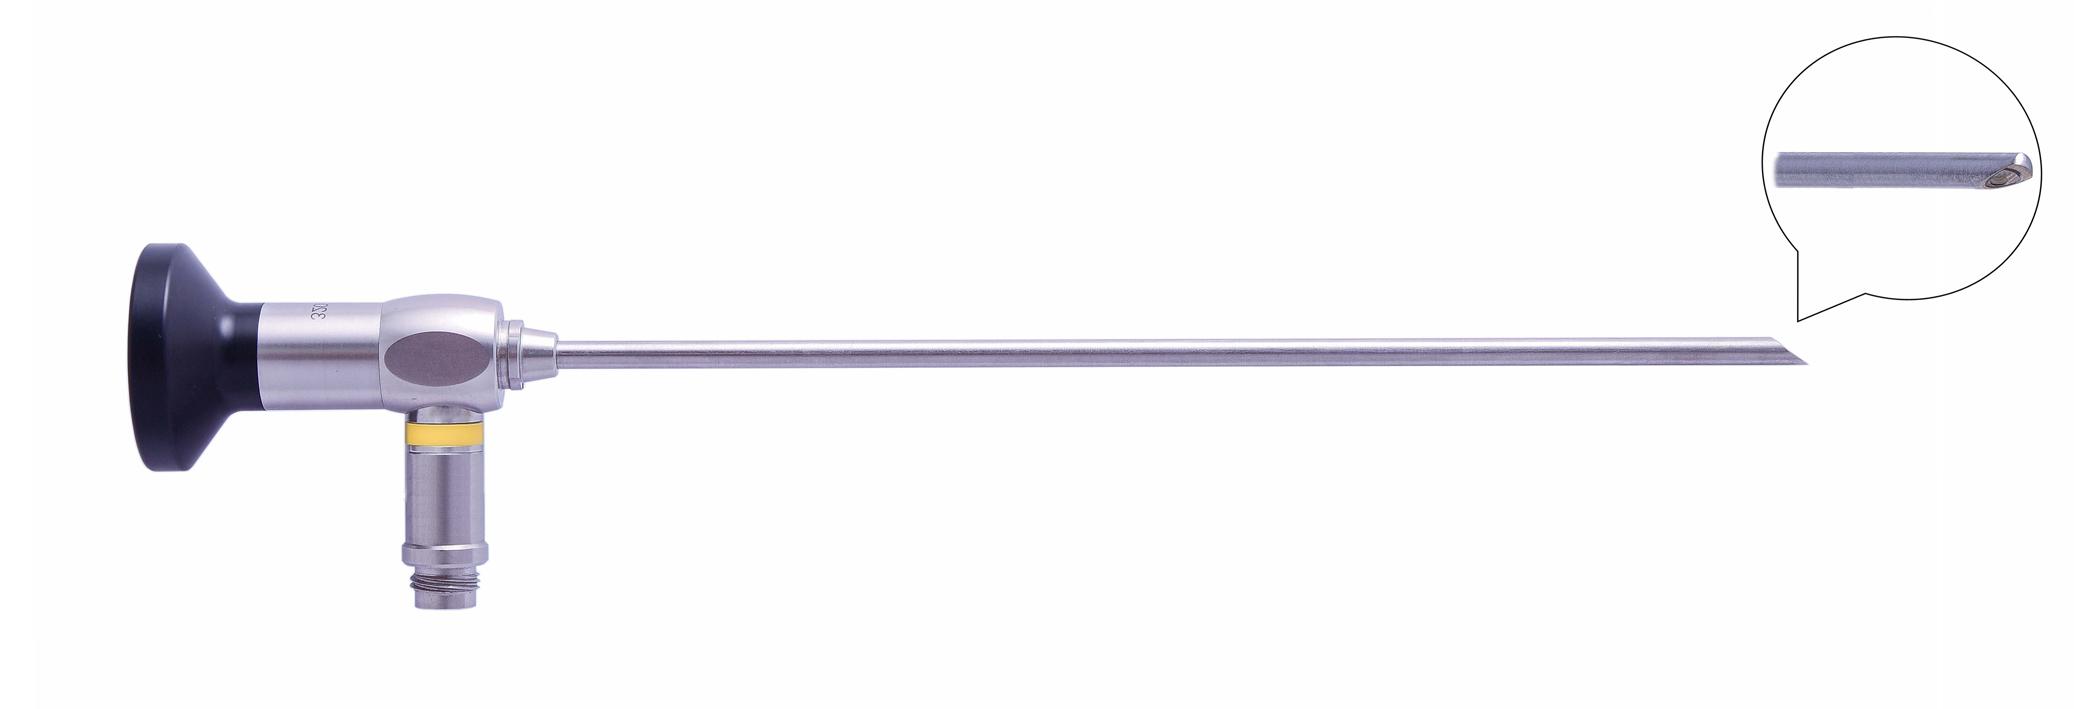 Трубка оптическая (артроскопическая, риноскопическая) ТОАР-016 диам. 4 мм, с углом наблюдения 70 гр.